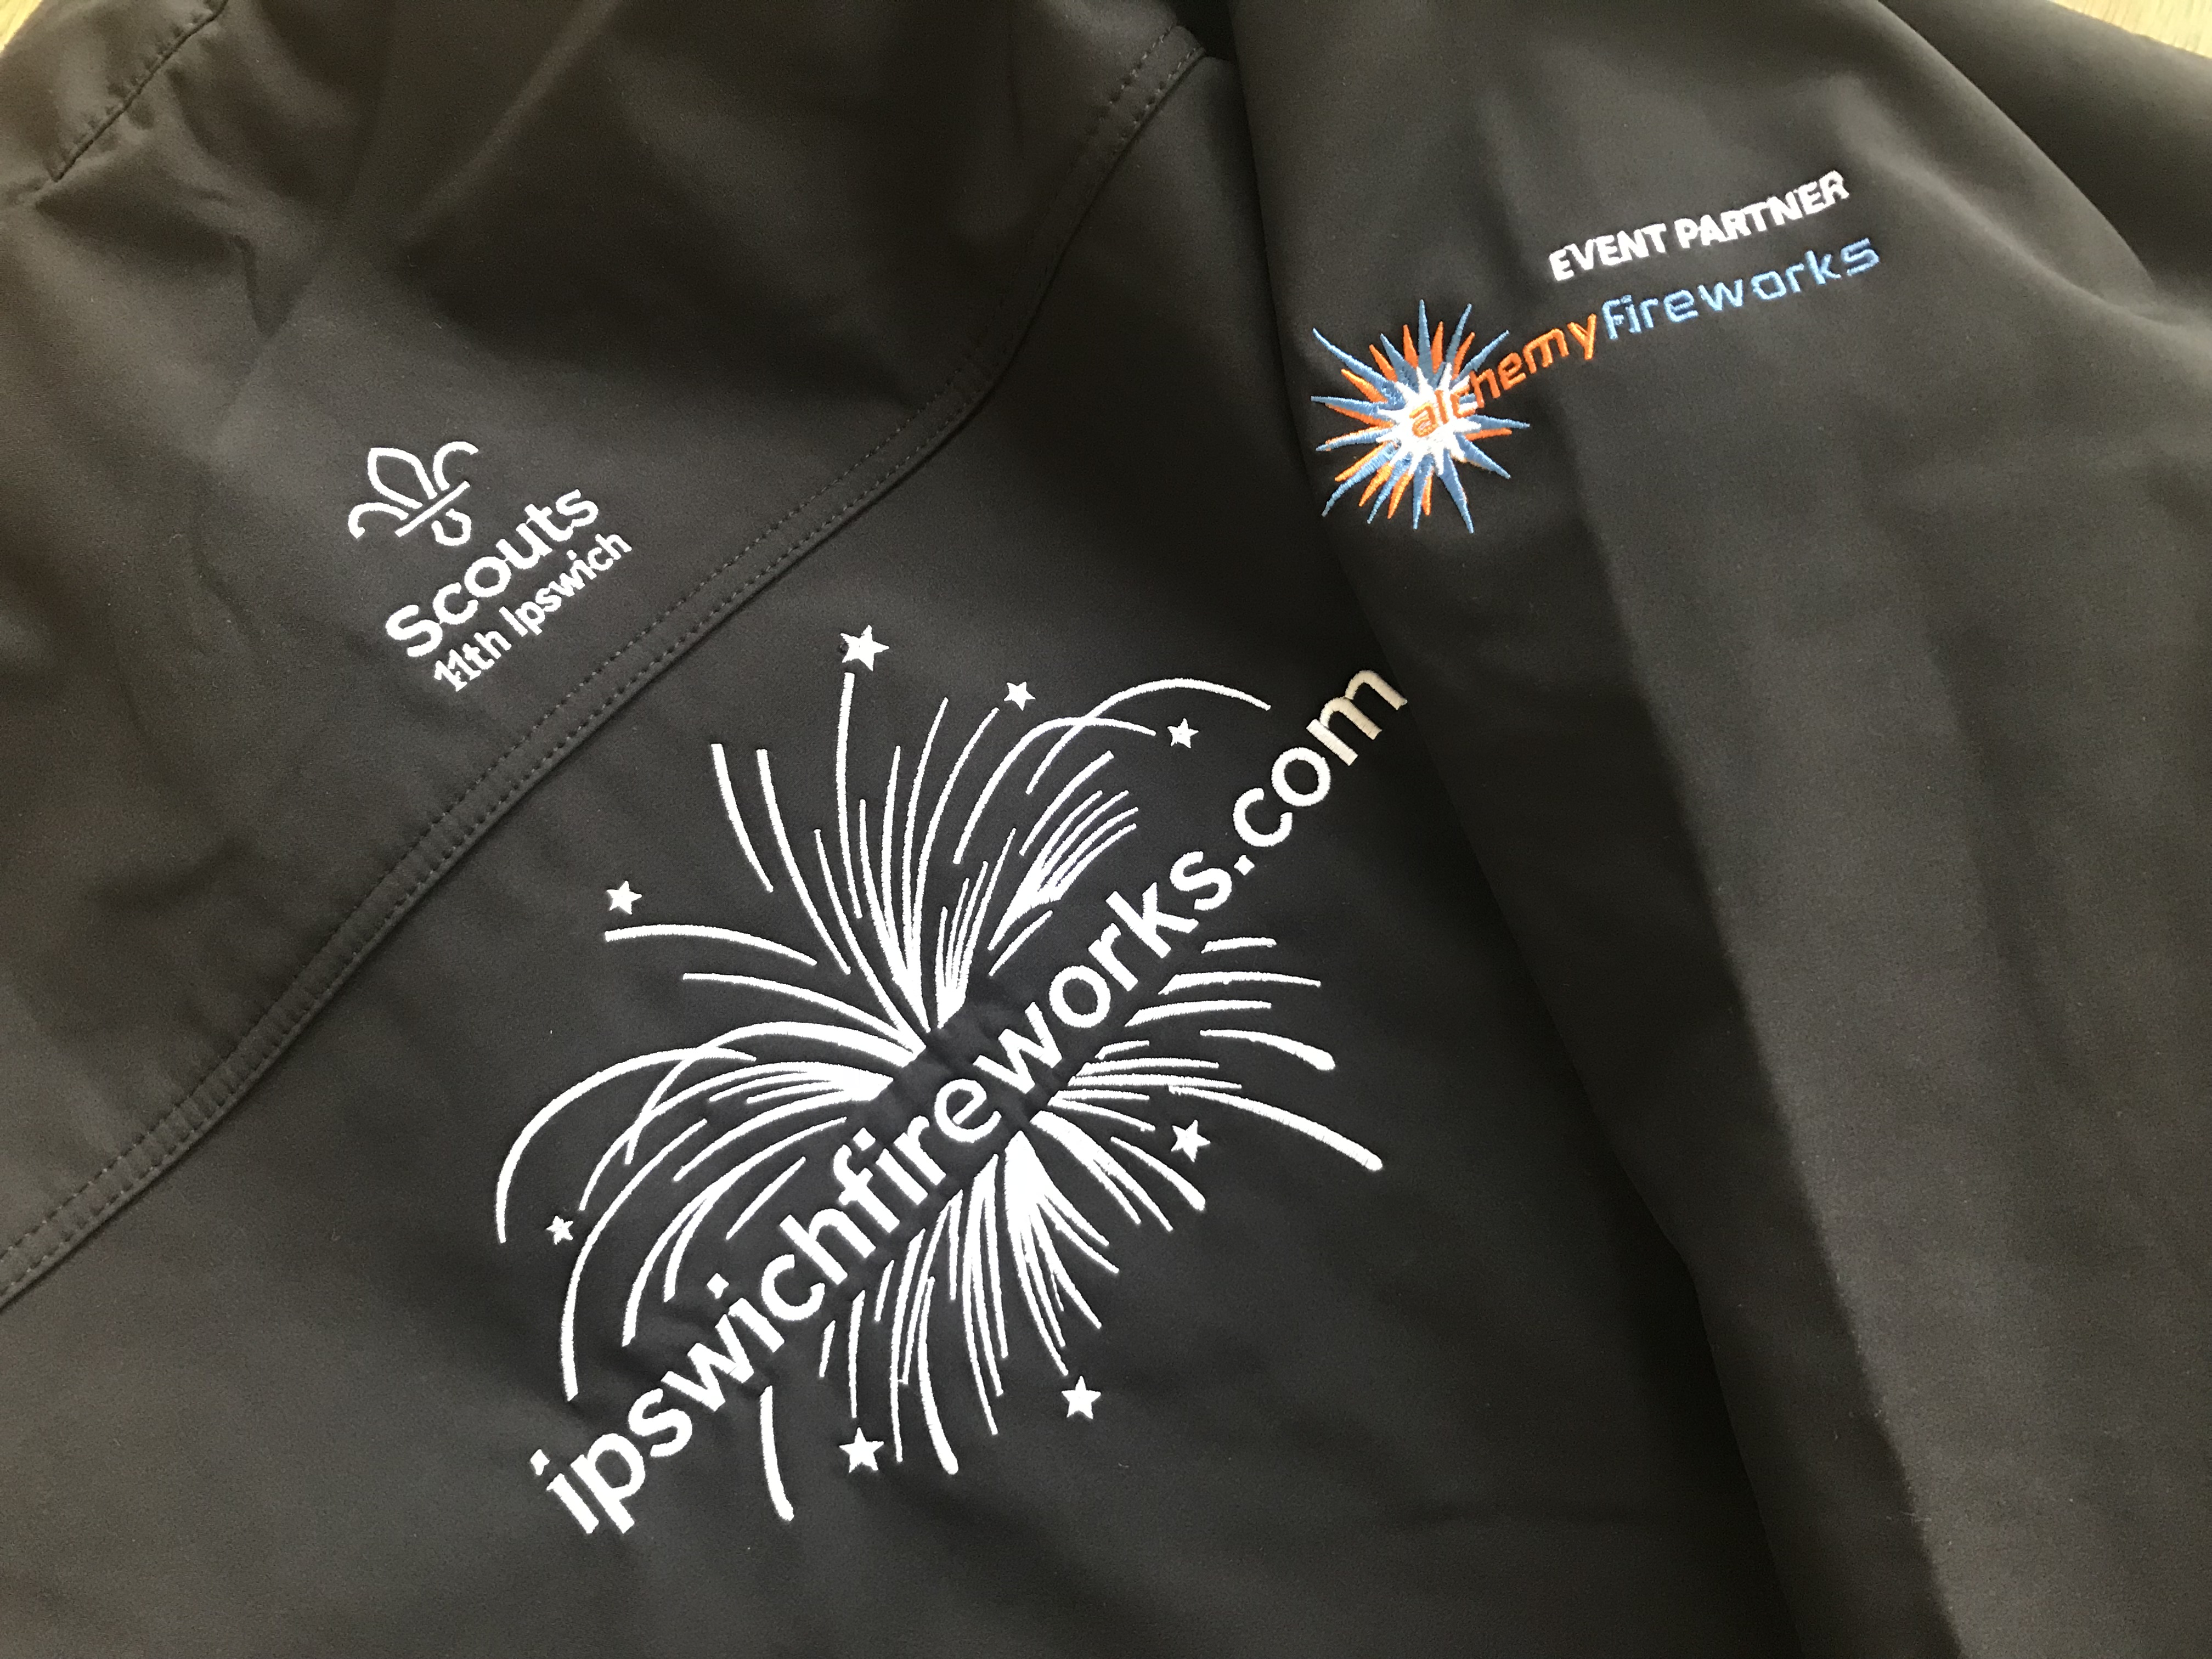 Ipswich Scouts Fireworks crew jacket with Alchemy Fireworks logo